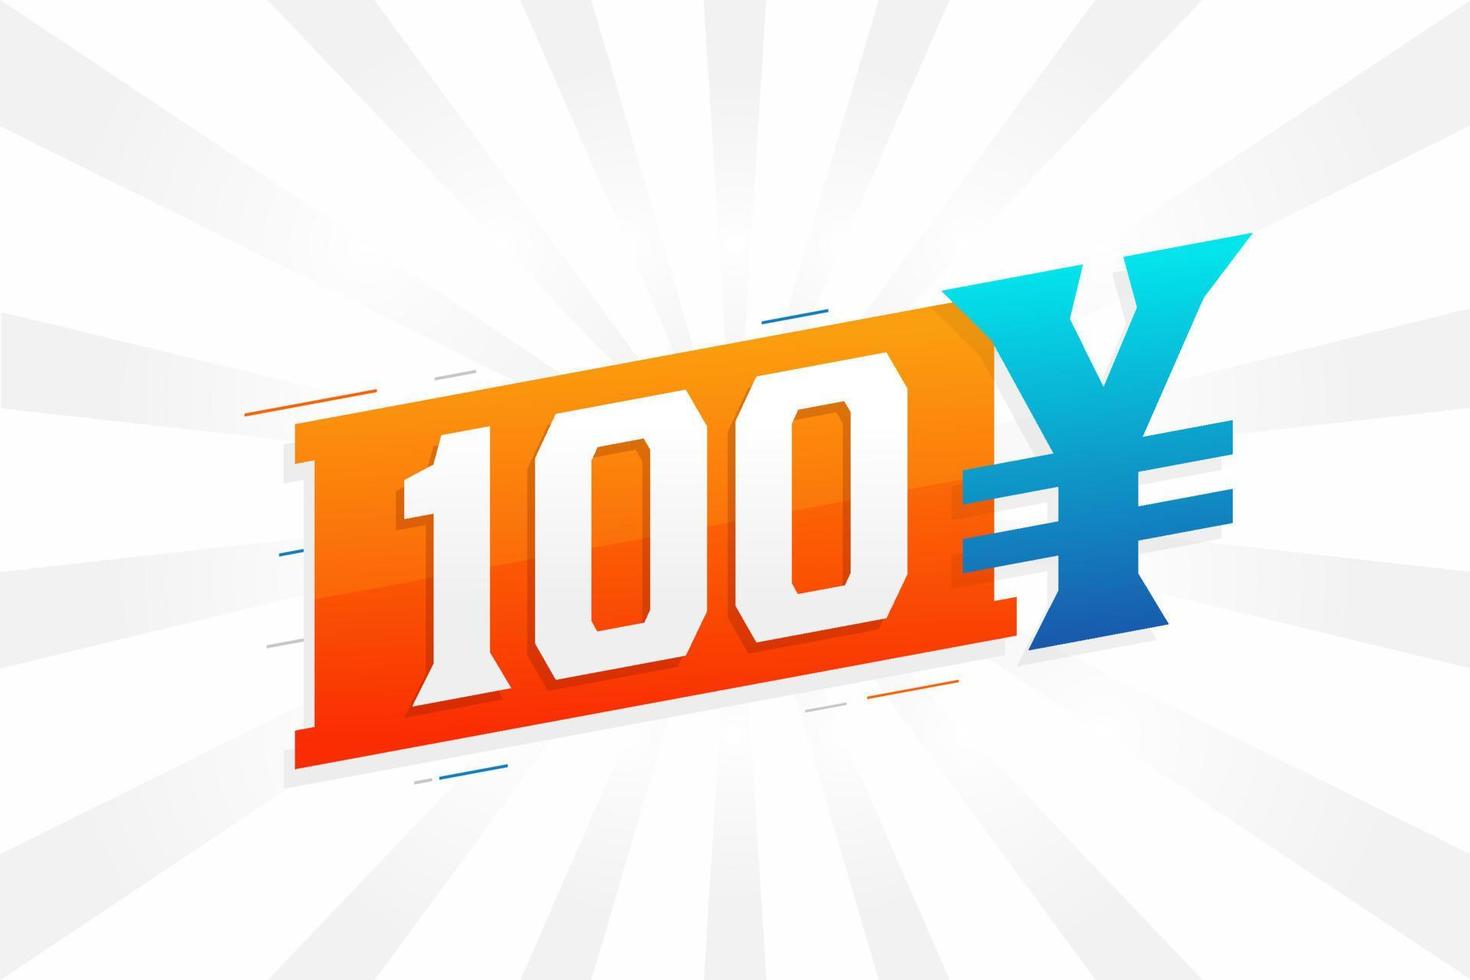 Símbolo de texto de vetor de moeda chinesa de 100 yuan. Vetor de estoque de dinheiro de moeda japonesa de 100 ienes